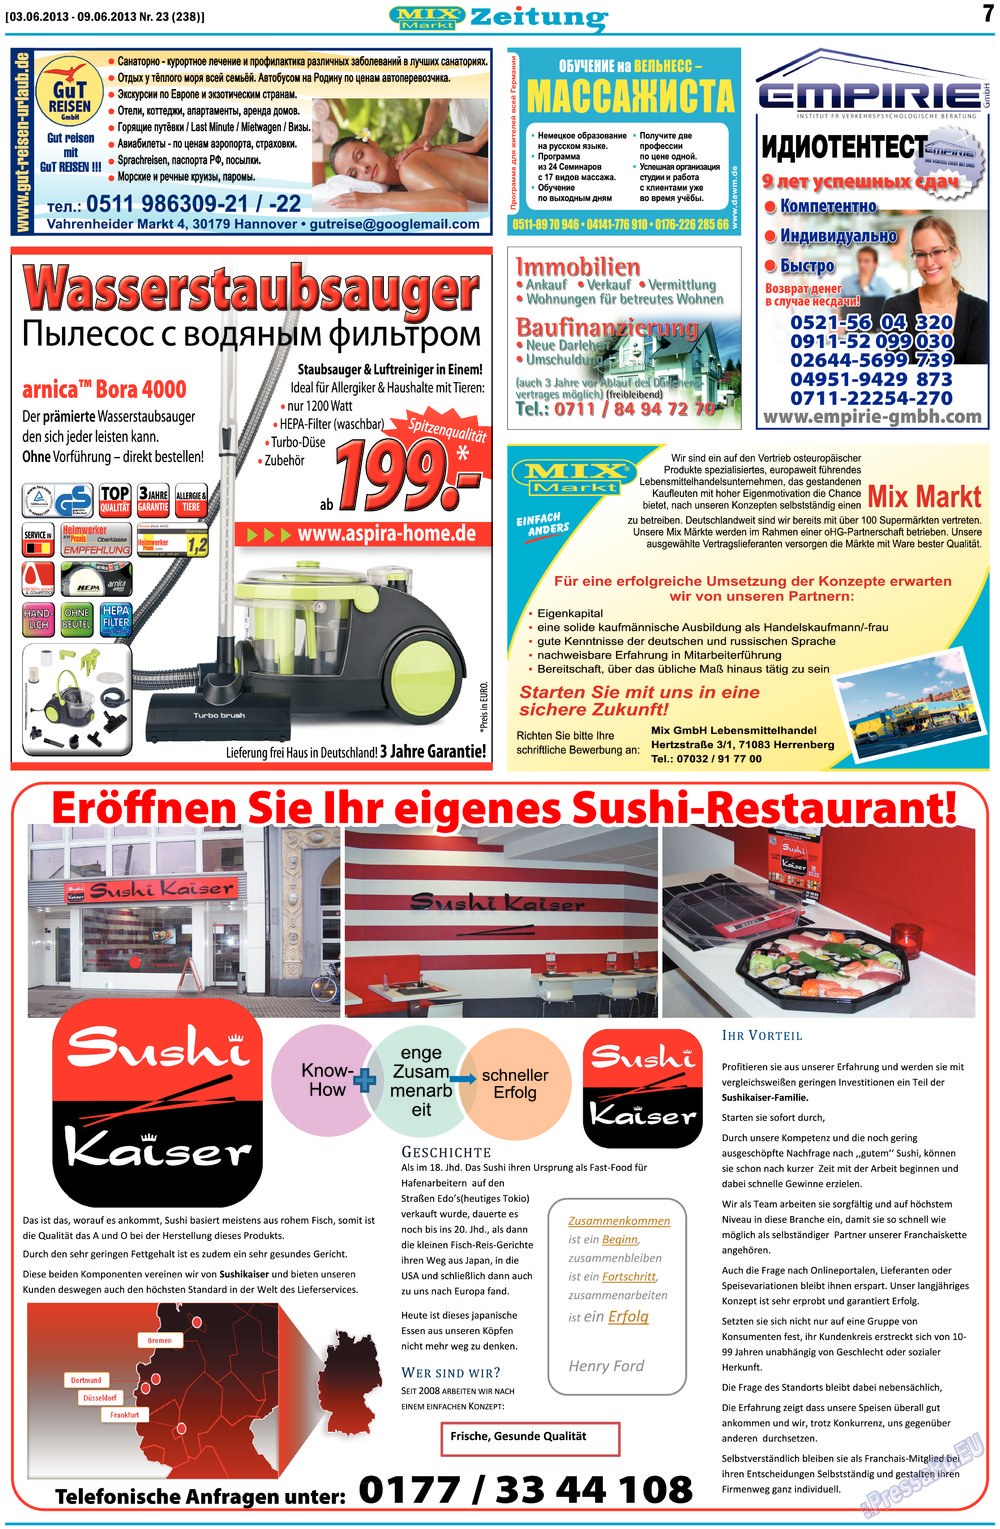 MIX-Markt Zeitung, газета. 2013 №23 стр.7